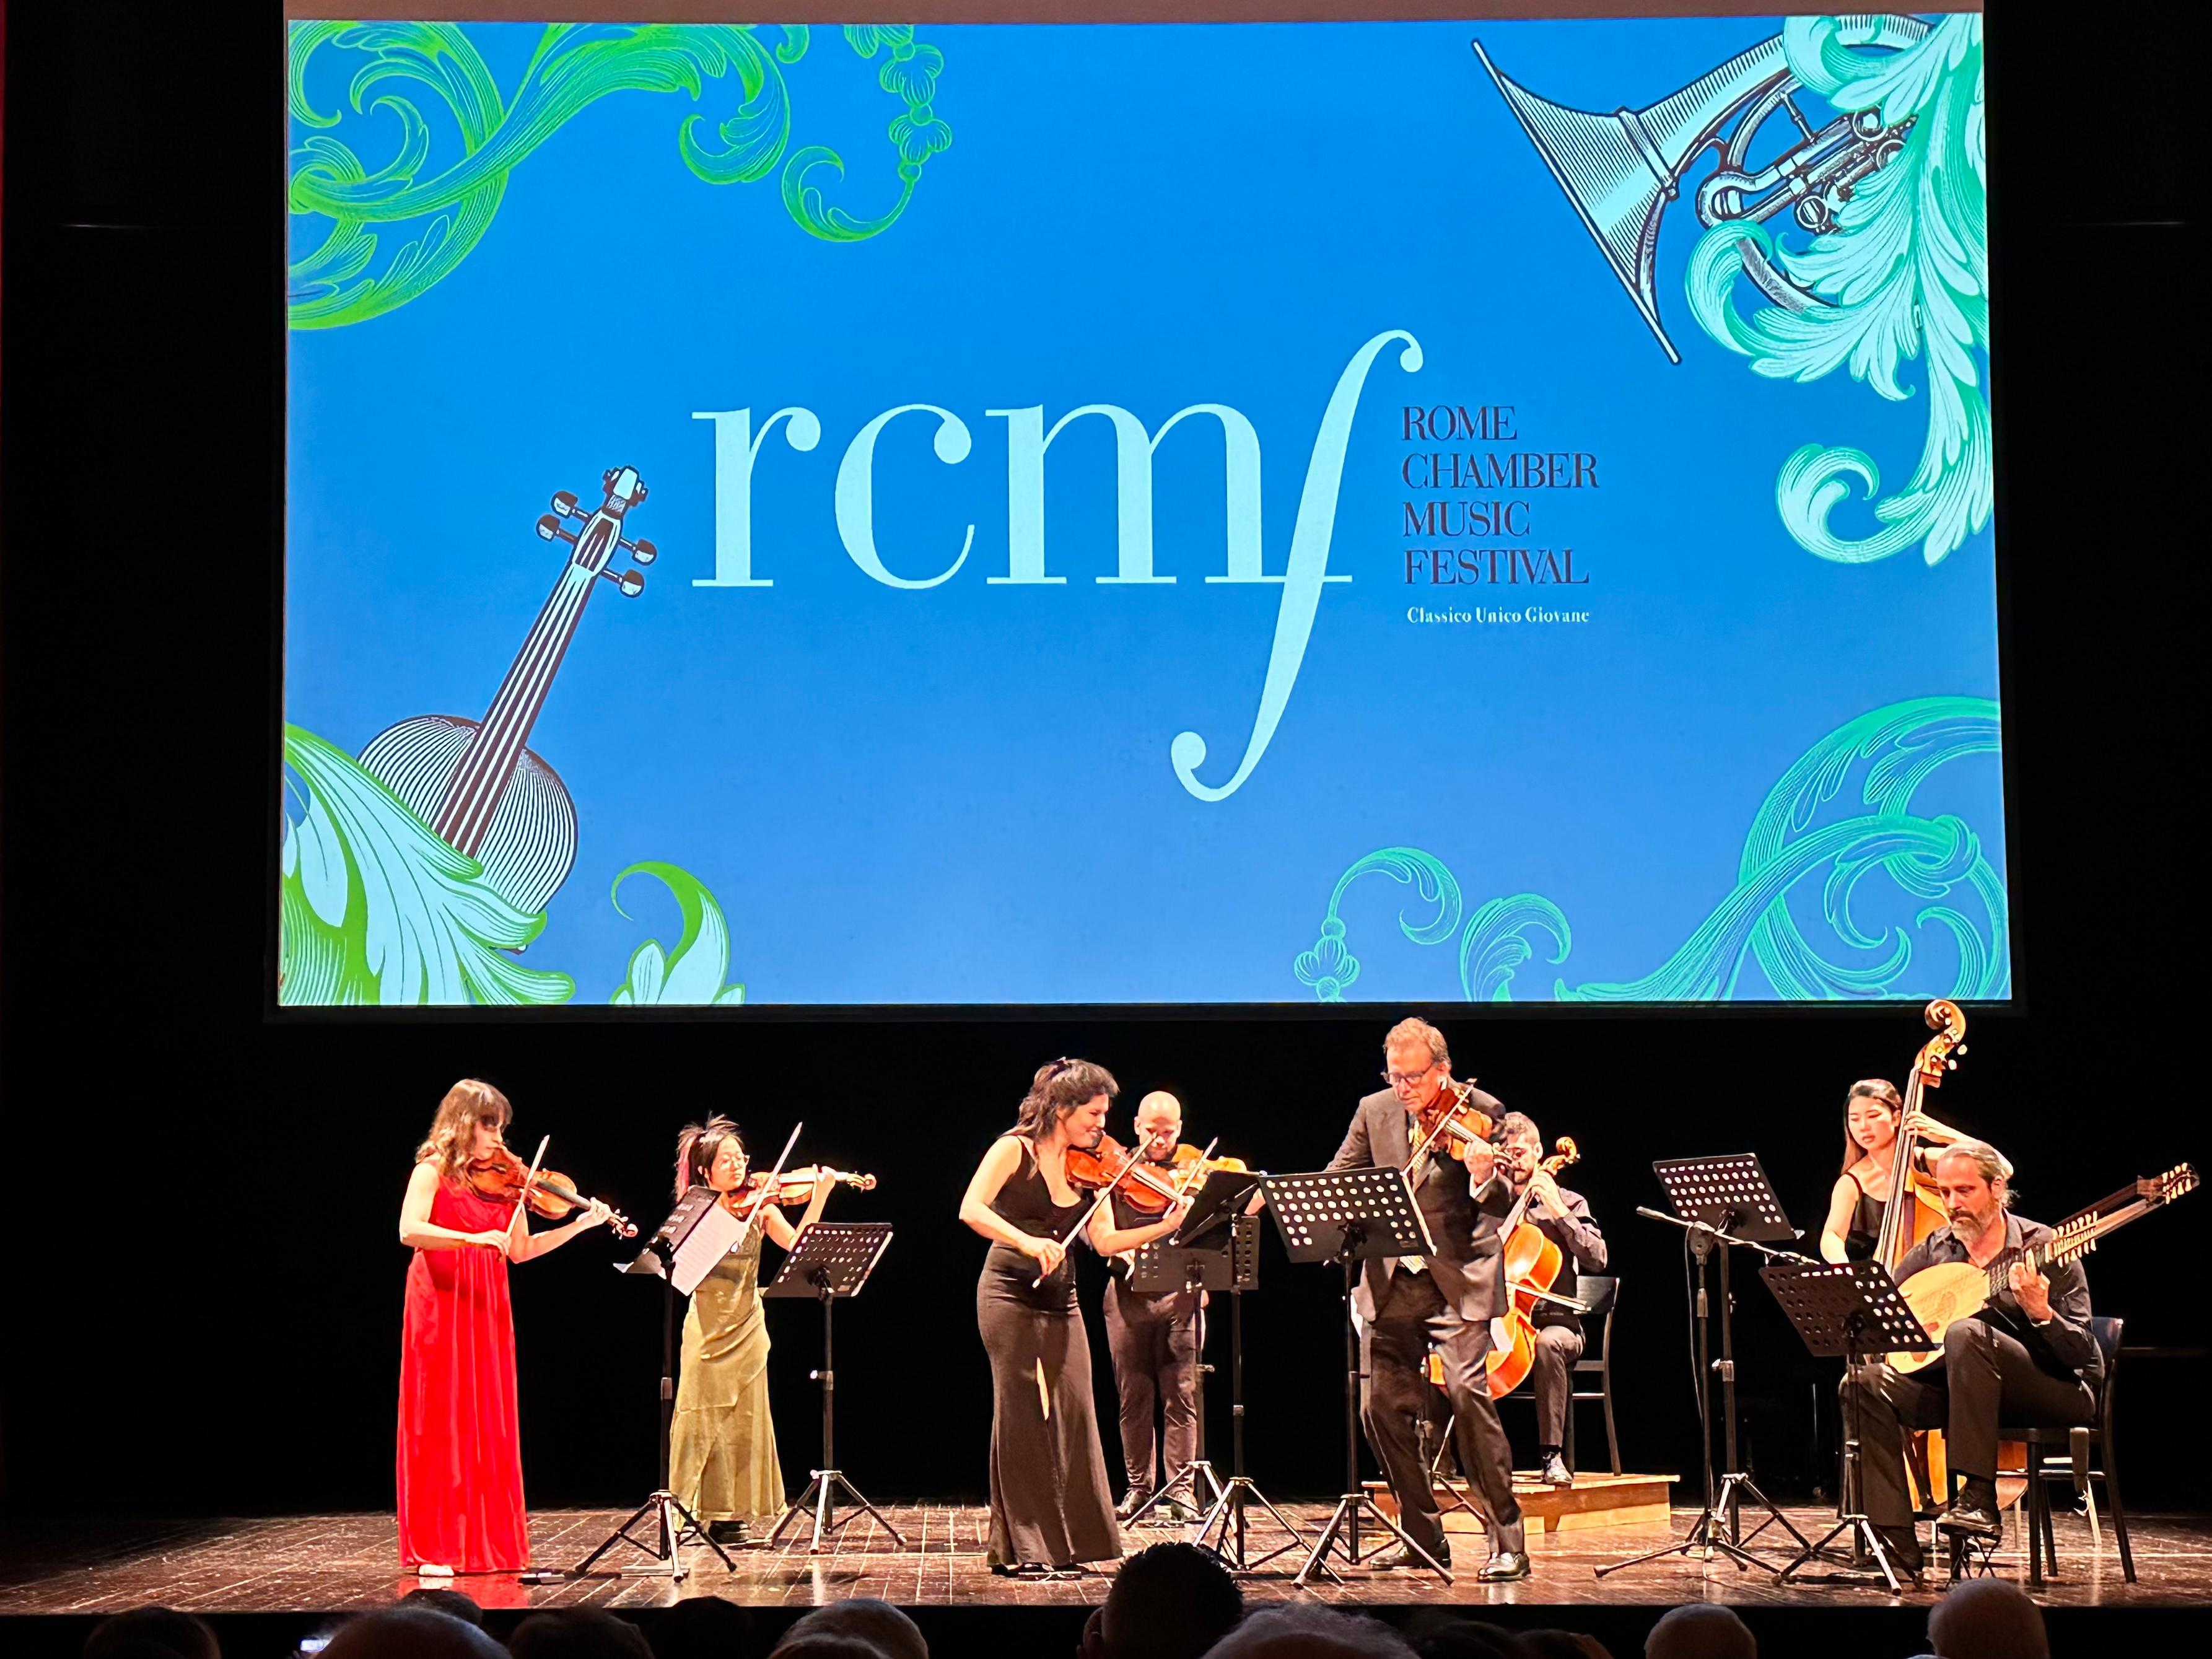 才华洋溢的香港青年低音大提琴演奏家陈浩恩于六月十九日（罗马时间）在罗马室内乐音乐节中表演。陈浩恩是入选本年度罗马室内乐音乐节青年艺术家计划的新晋艺术家。